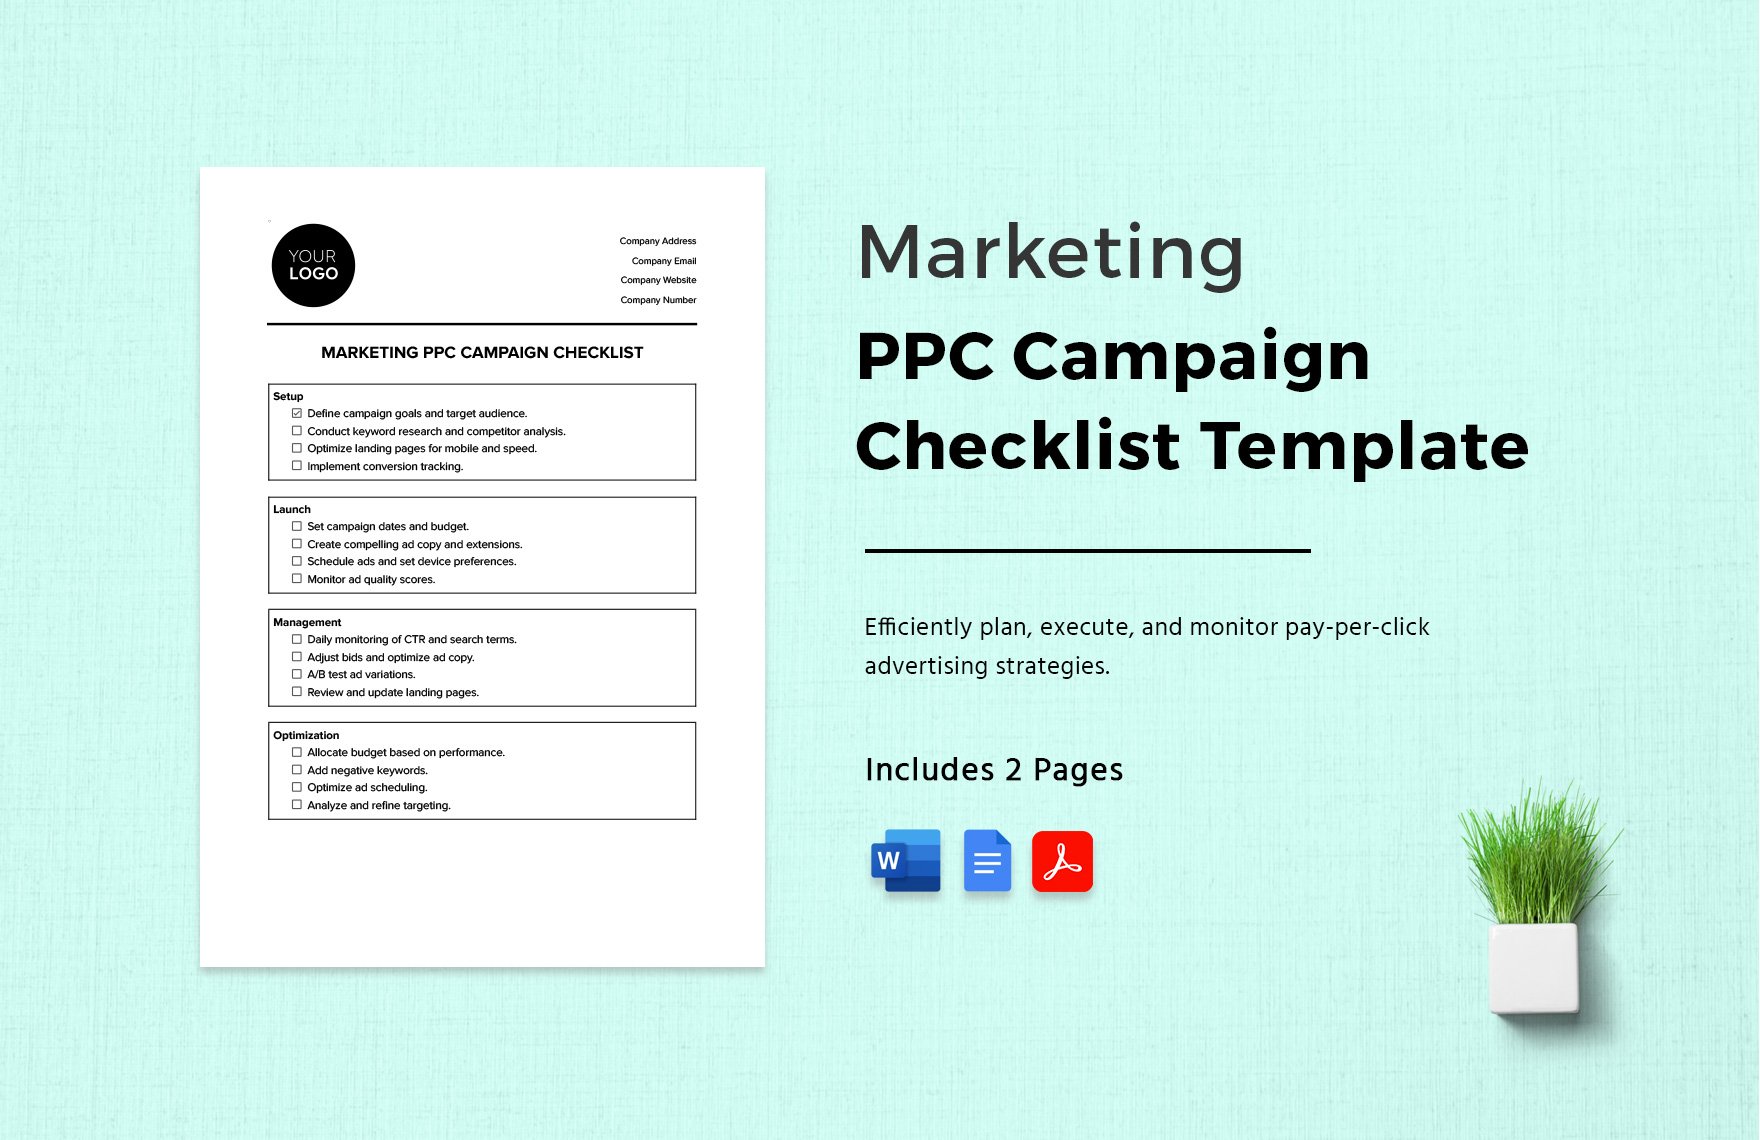 Marketing PPC Campaign Checklist Template